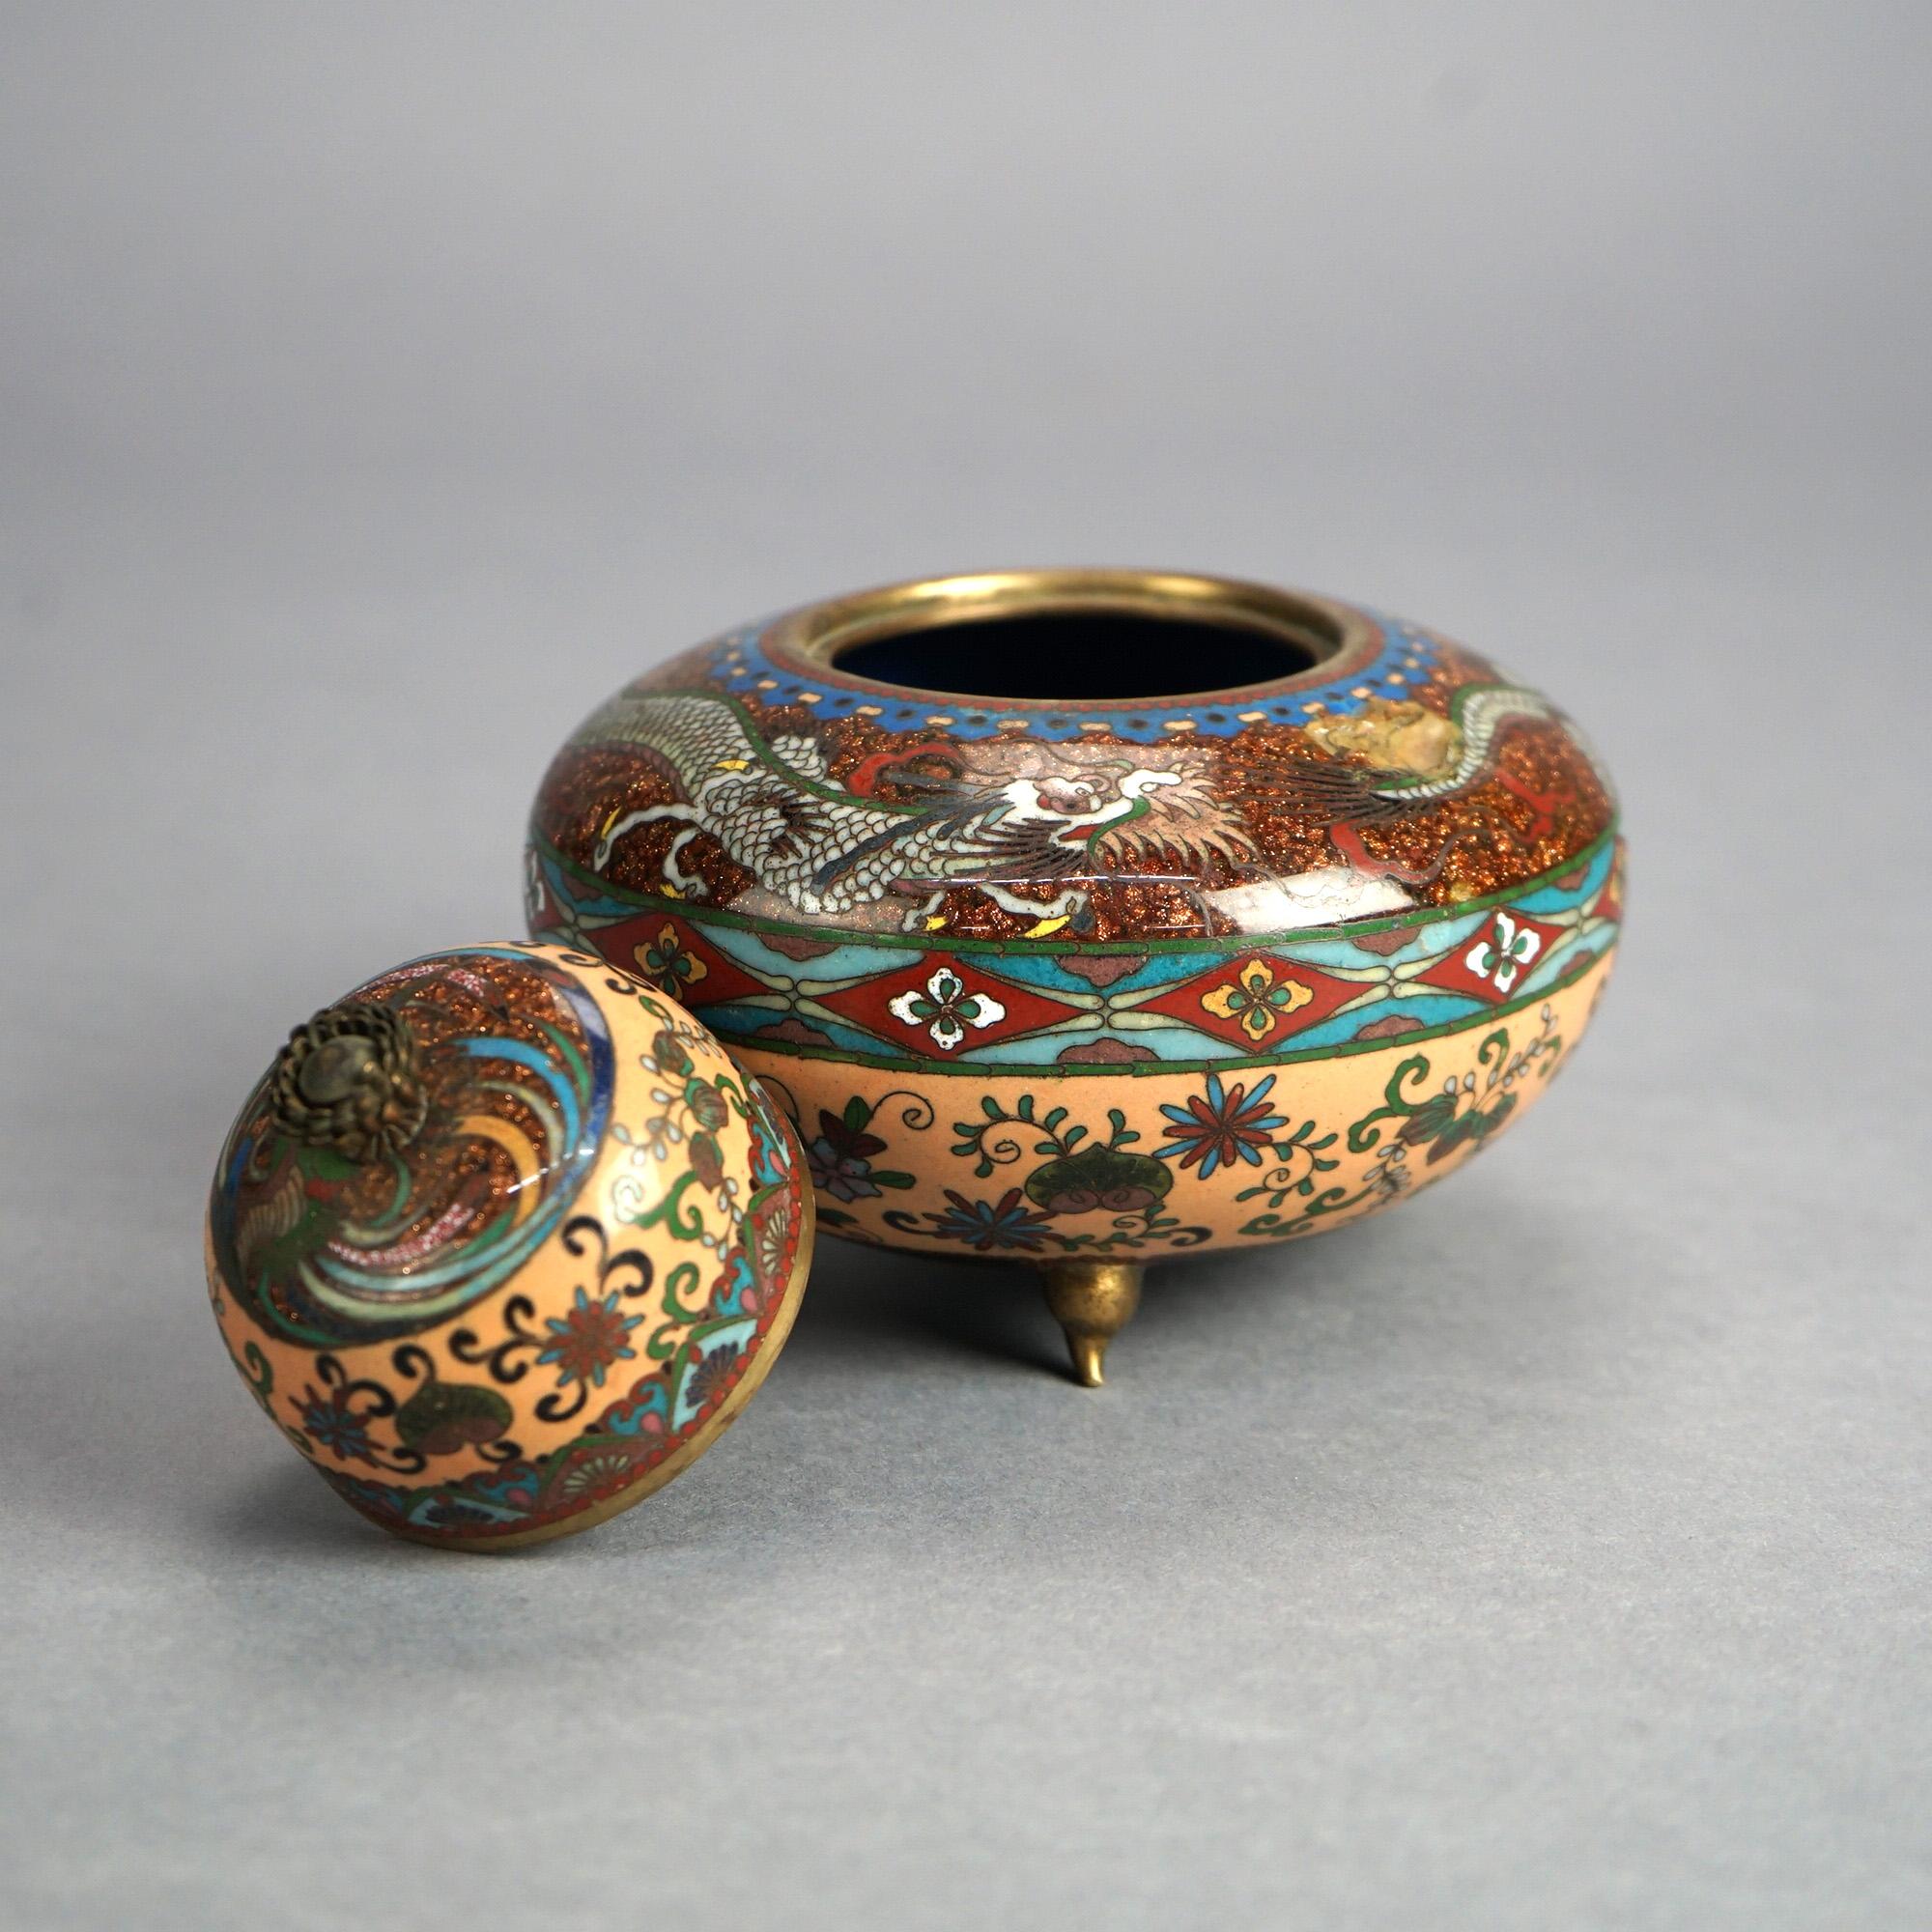 Ancienne jarre à parfum japonaise Meiji cloisonnée et émaillée, à pied et à couvercle, avec dragon et fleurs, vers 1920

Dimensions : 5''H x 5.25''W x 5.25''D